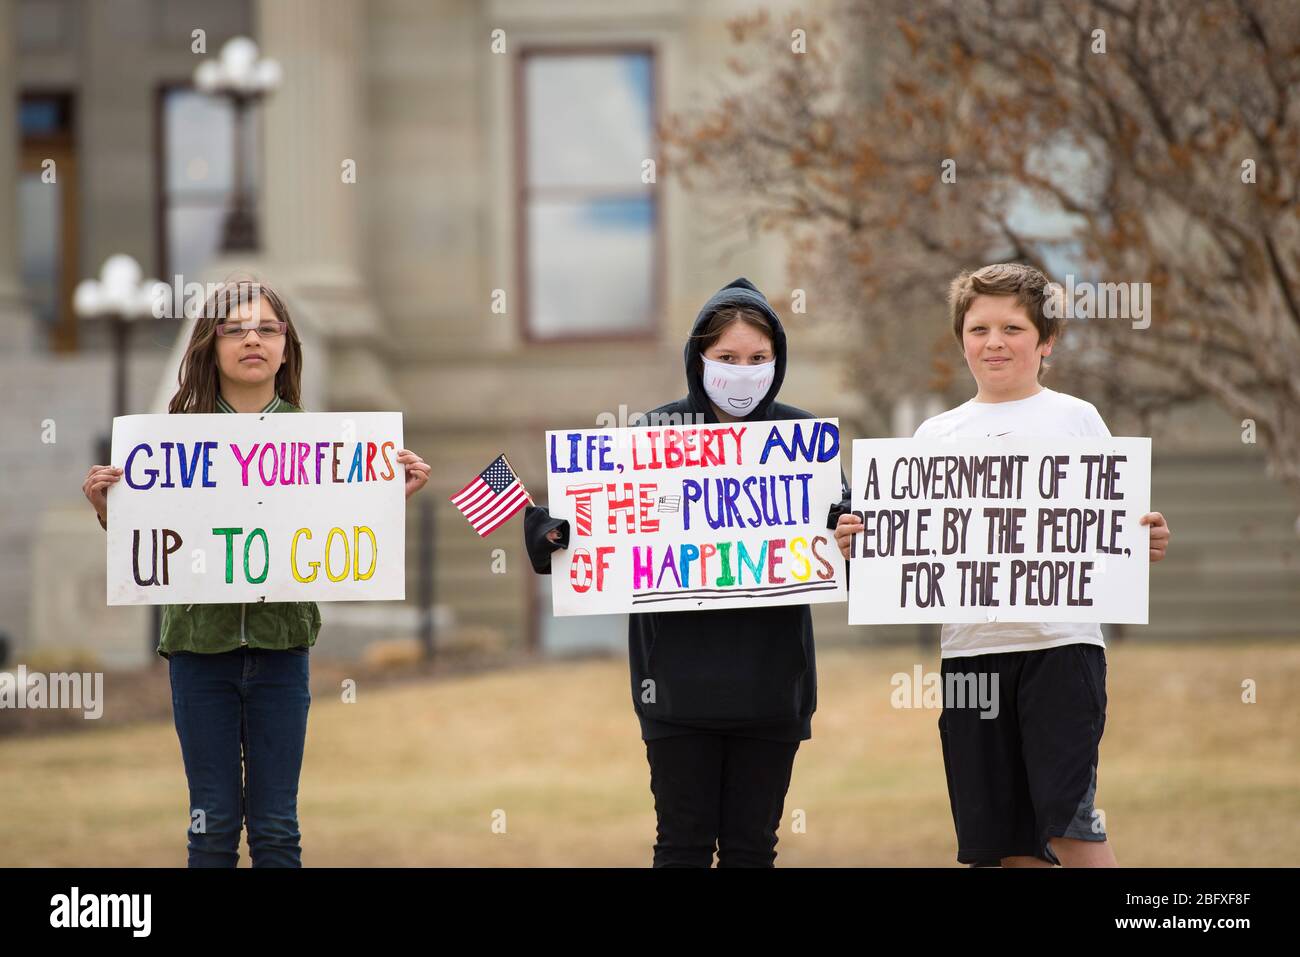 Helena, Montana - 19 avril 2020: Les enfants se tiennent devant le bâtiment du Capitole de l'État, où des panneaux portent des masques pour protester contre l'arrêt du gouvernement Banque D'Images